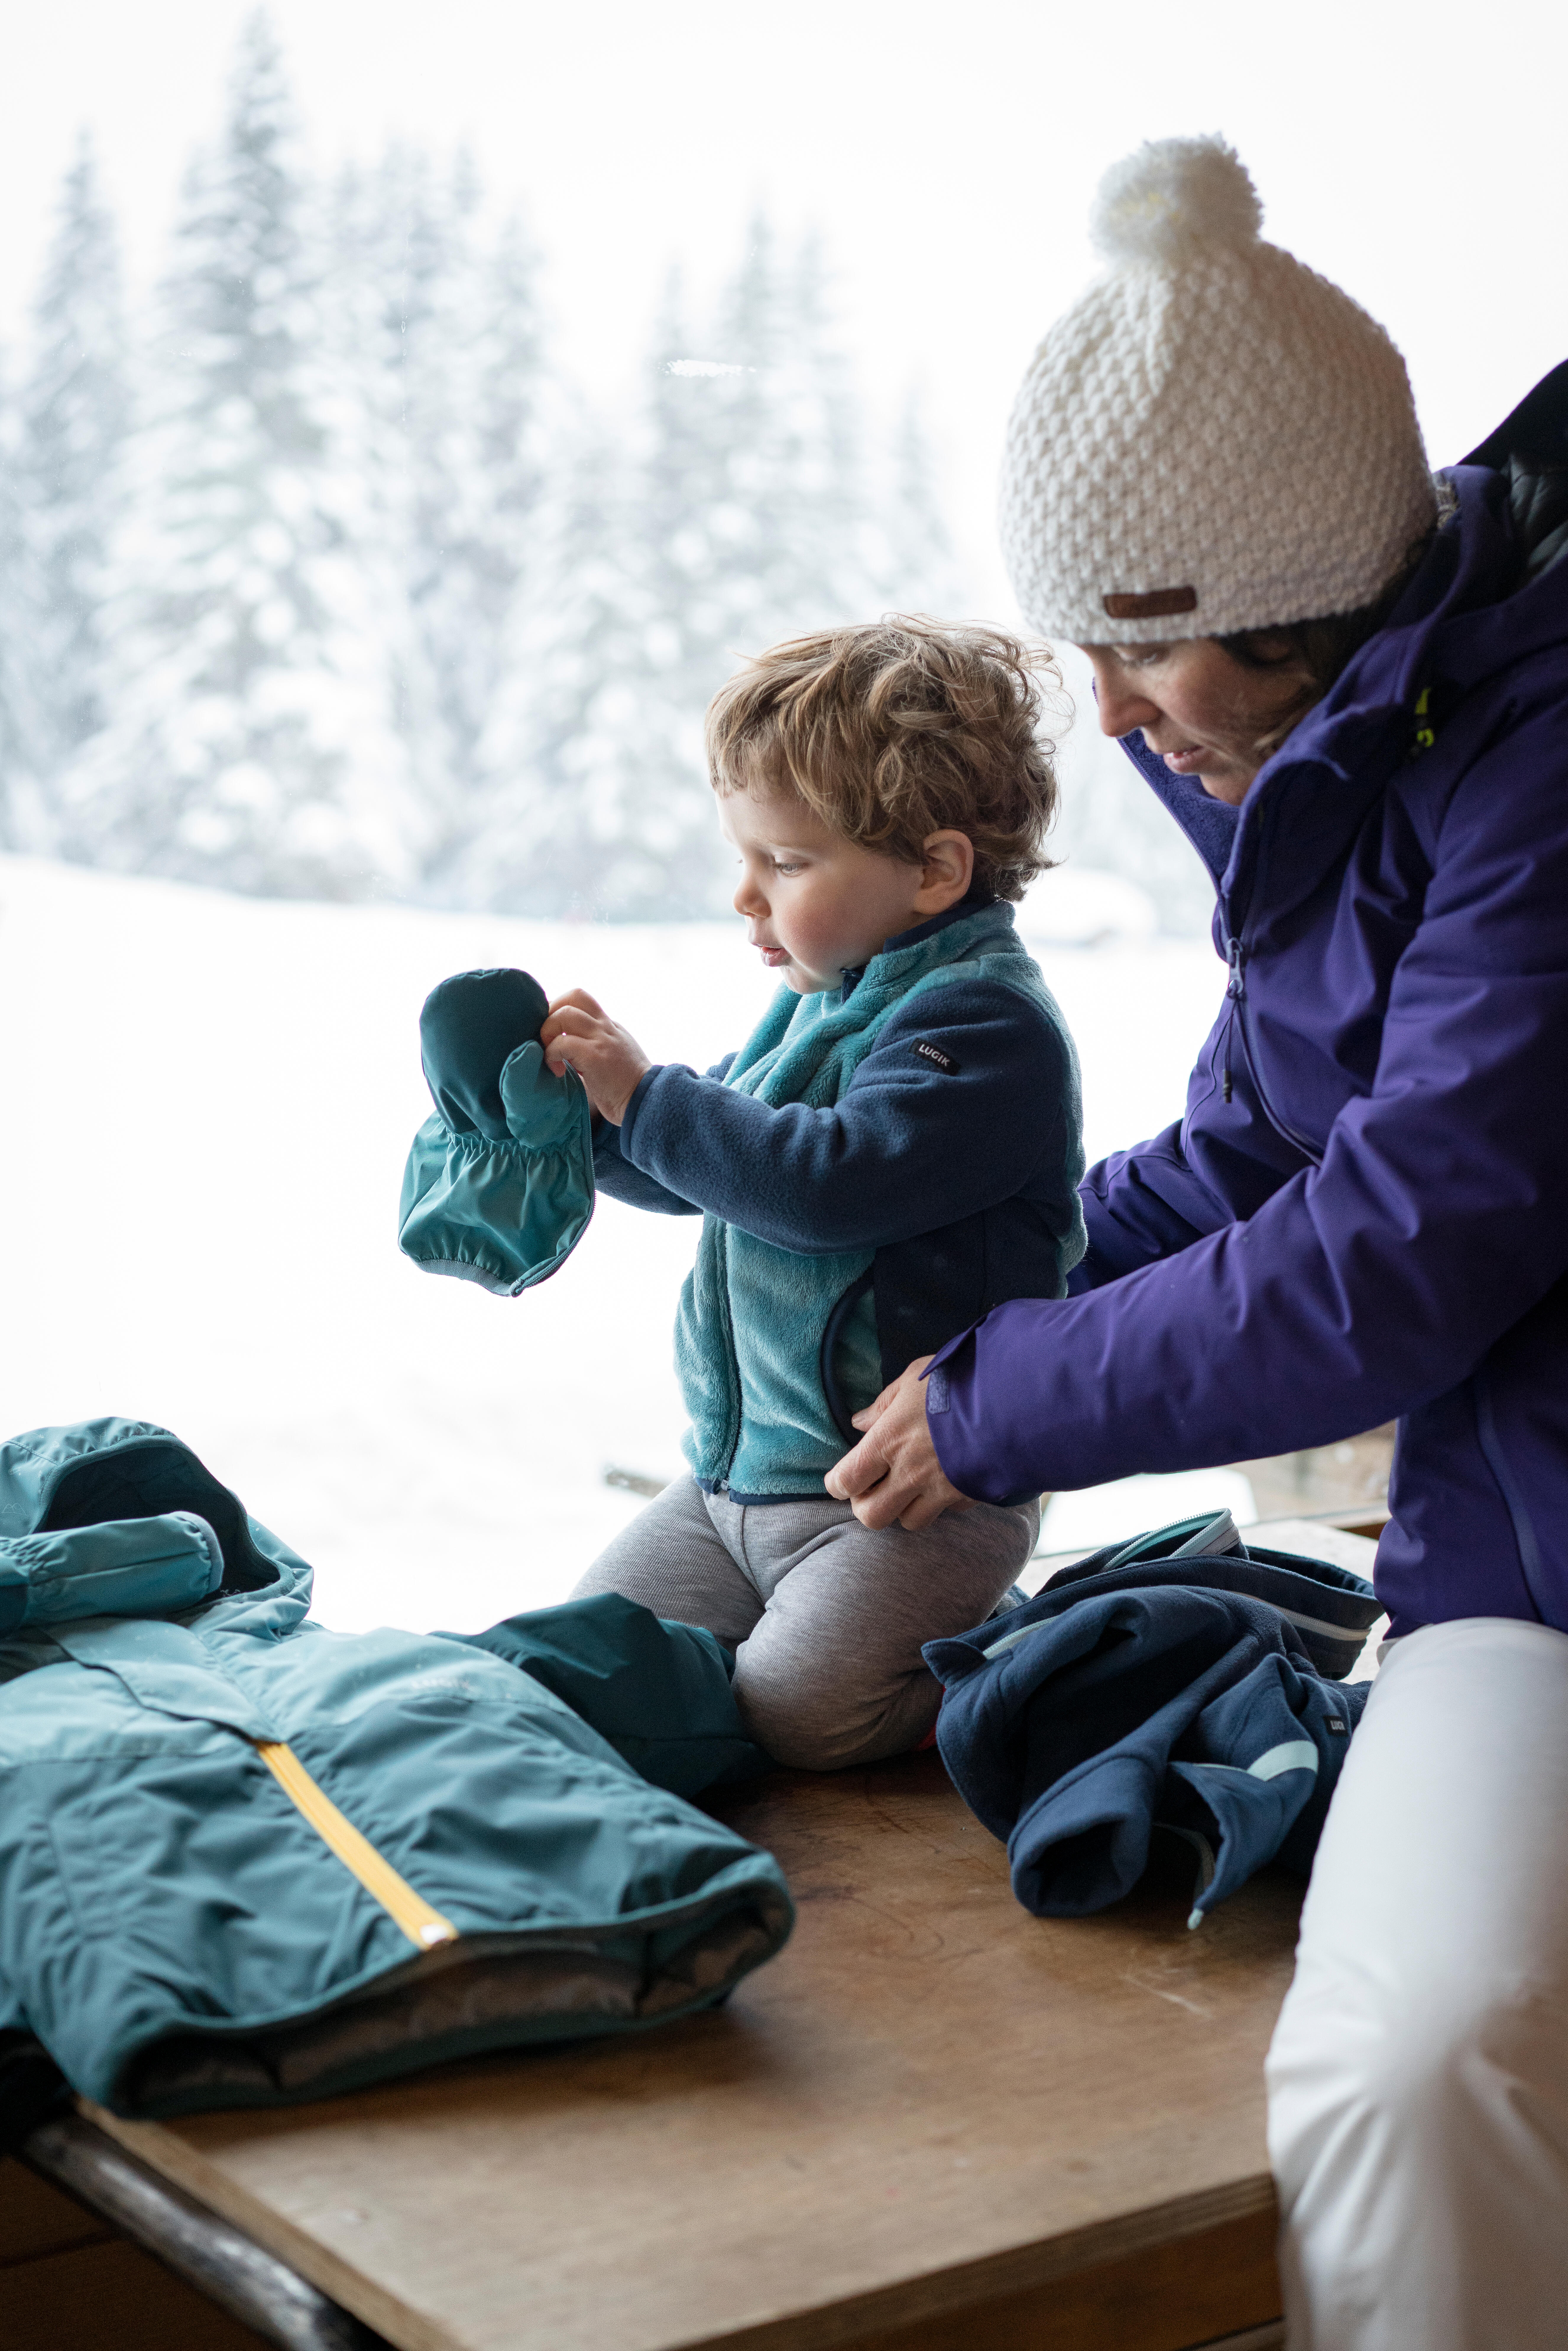 Manteau en laine polaire enfant - 500 Mid-Warm bleu - WEDZE